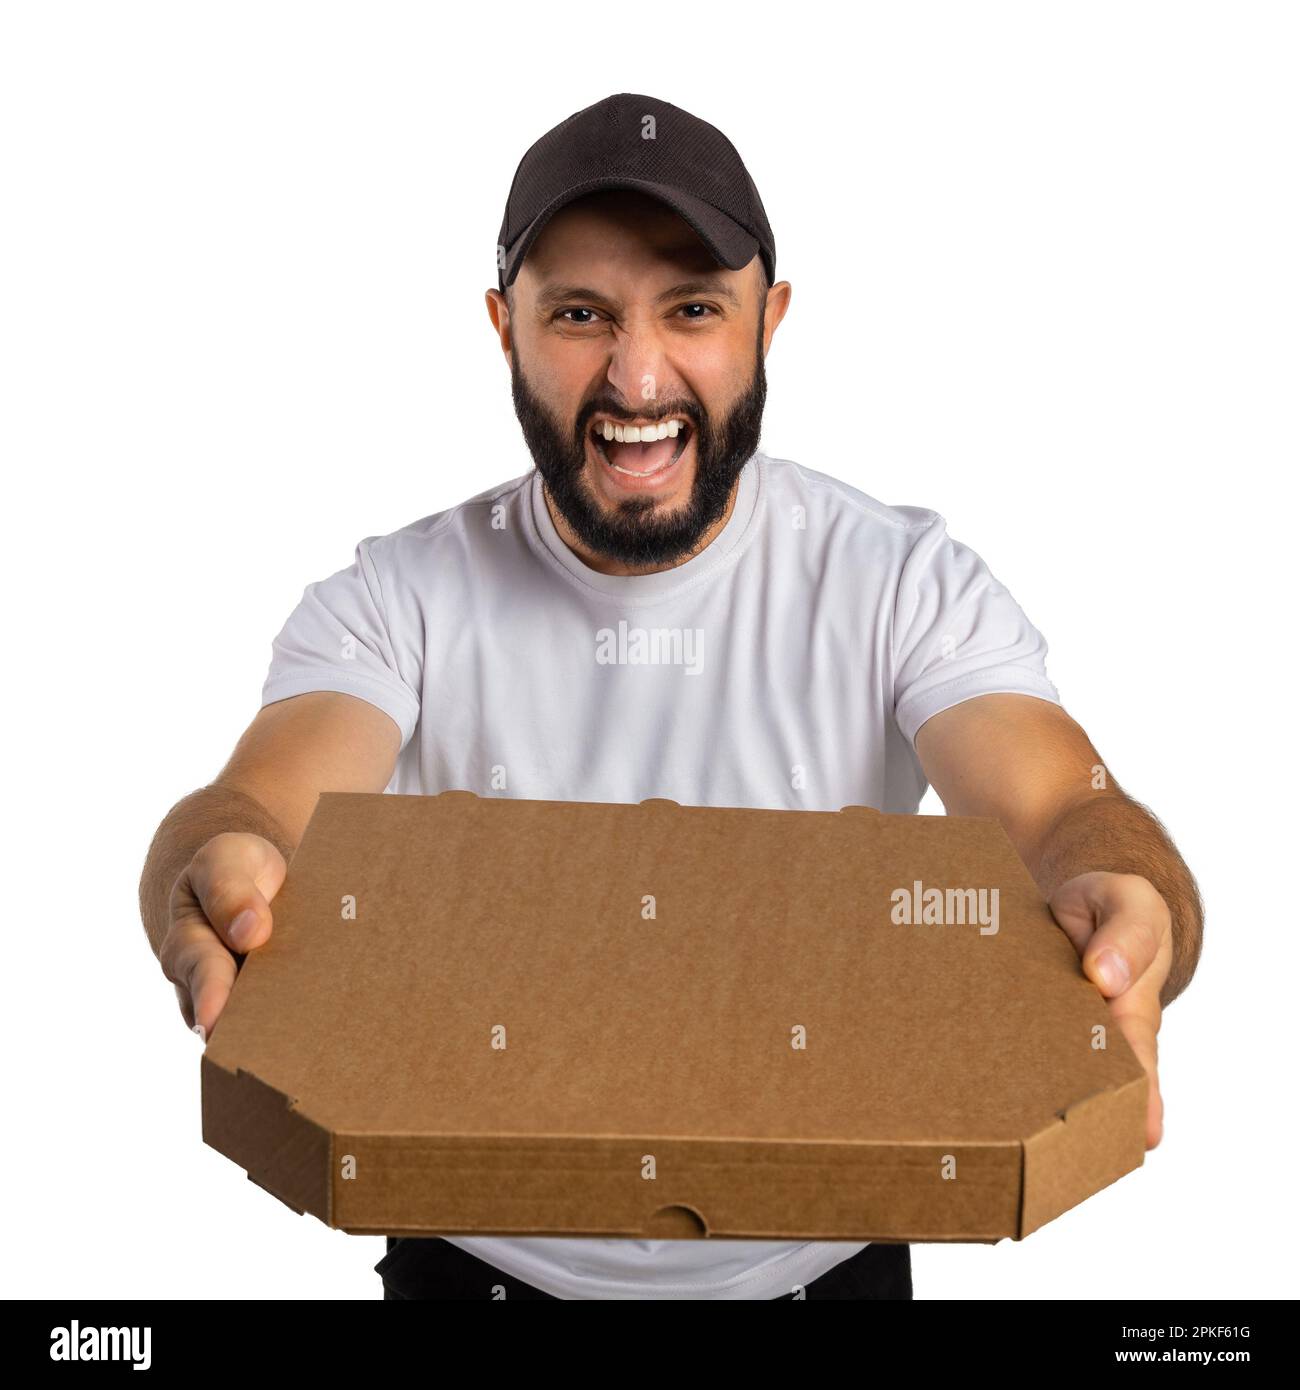 Un jeune homme barbu crie et démontre de manière agressive une boîte à pizza fermée isolée sur fond blanc. Peut être utilisé pour représenter votre propre logo. Banque D'Images